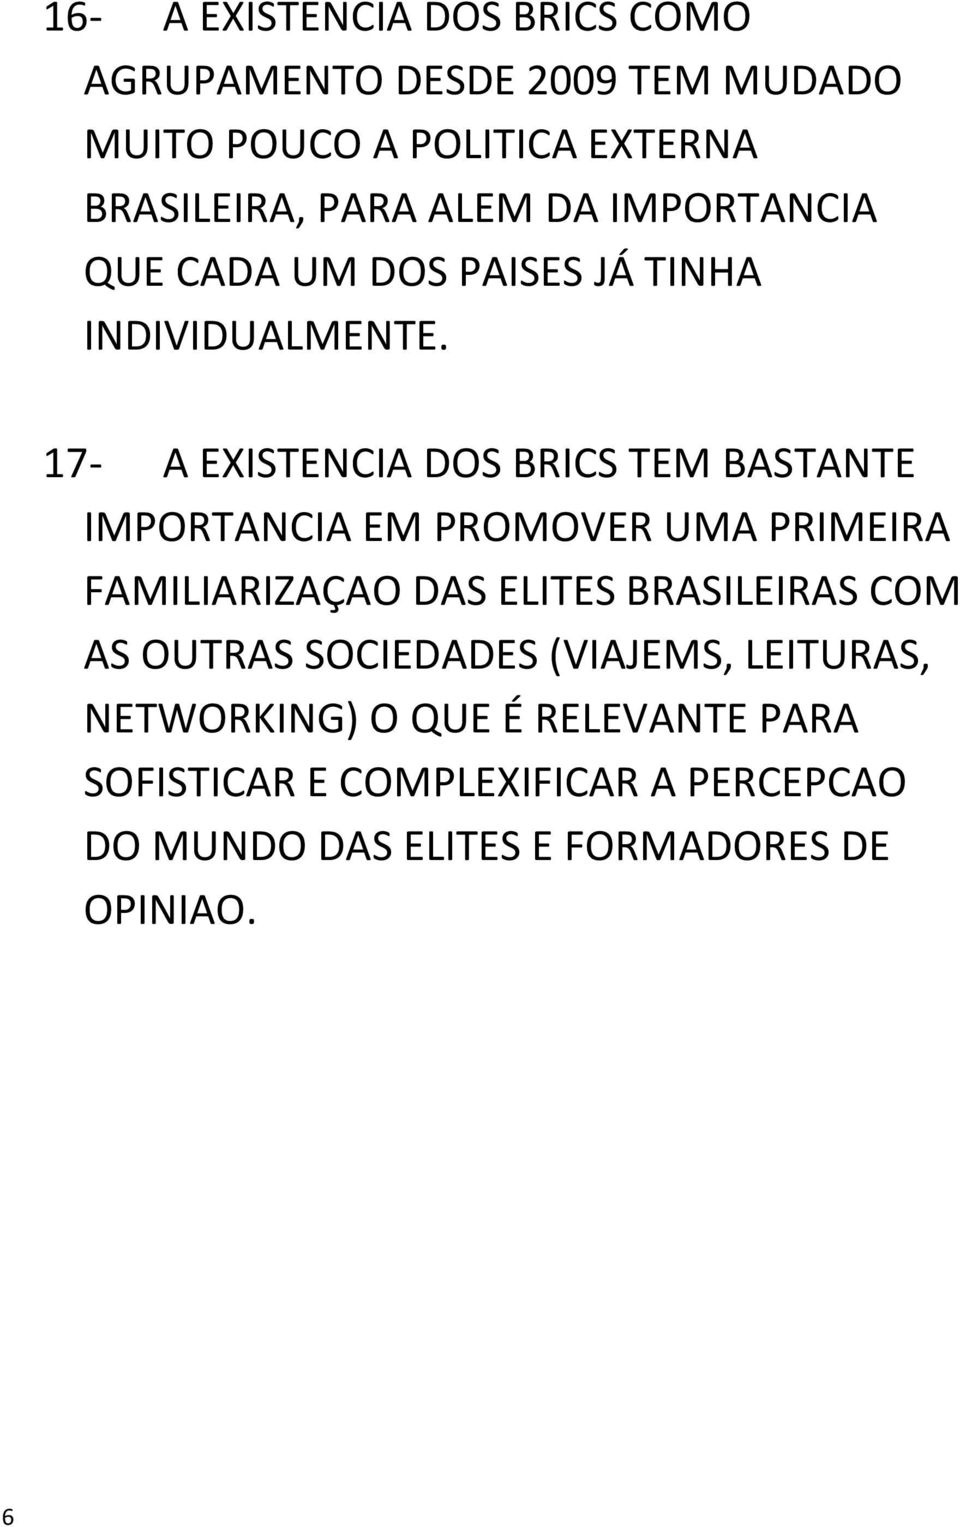 17- A EXISTENCIA DOS BRICS TEM BASTANTE IMPORTANCIA EM PROMOVER UMA PRIMEIRA FAMILIARIZAÇAO DAS ELITES BRASILEIRAS